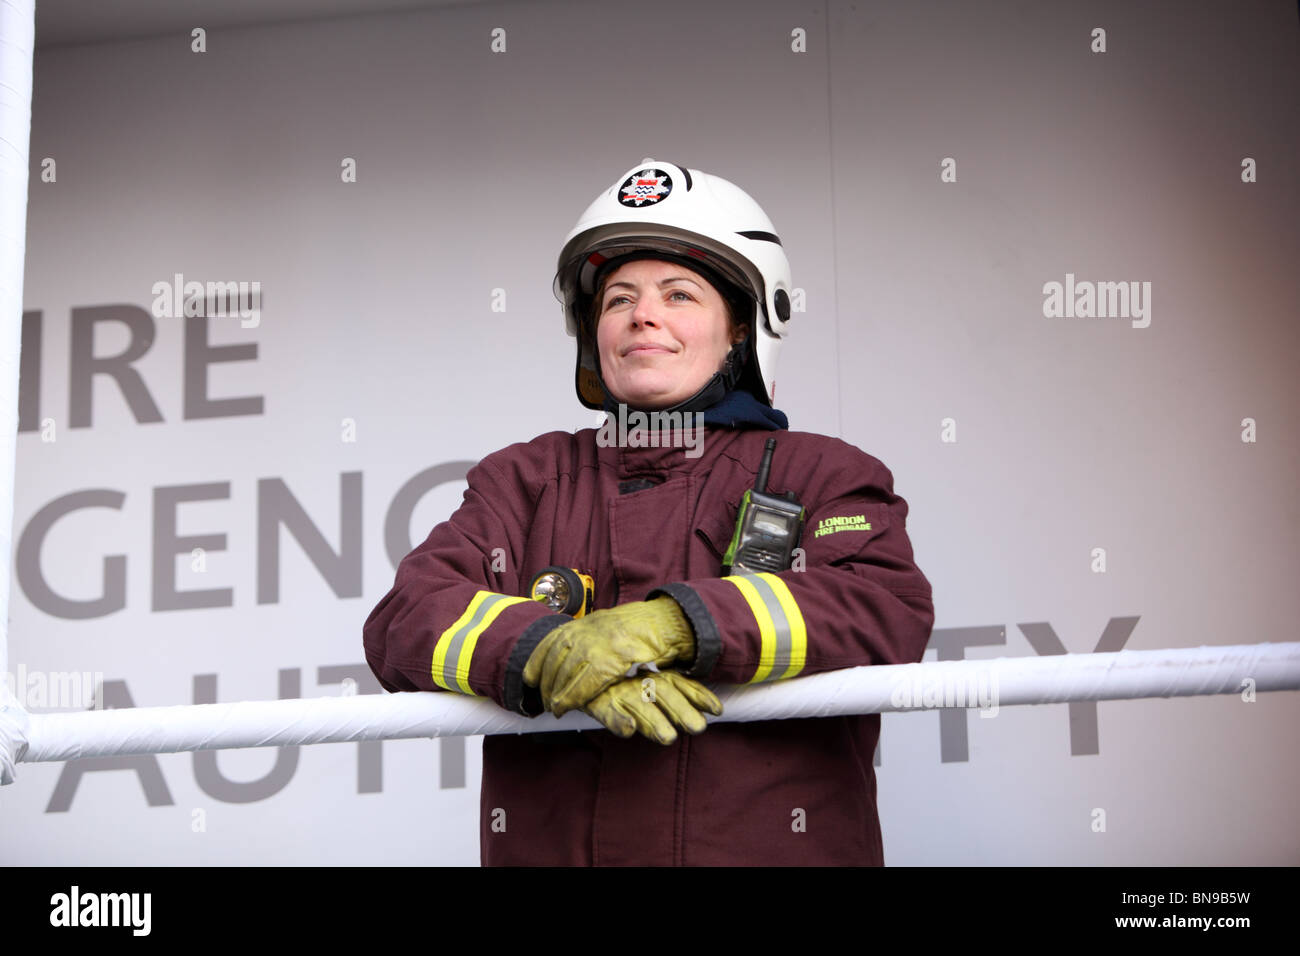 Ein weibliches Mitglied der London Fire Authority, die Teilnahme an der neuen Jahre Day Parade, Westminster, London, SW1. Stockfoto